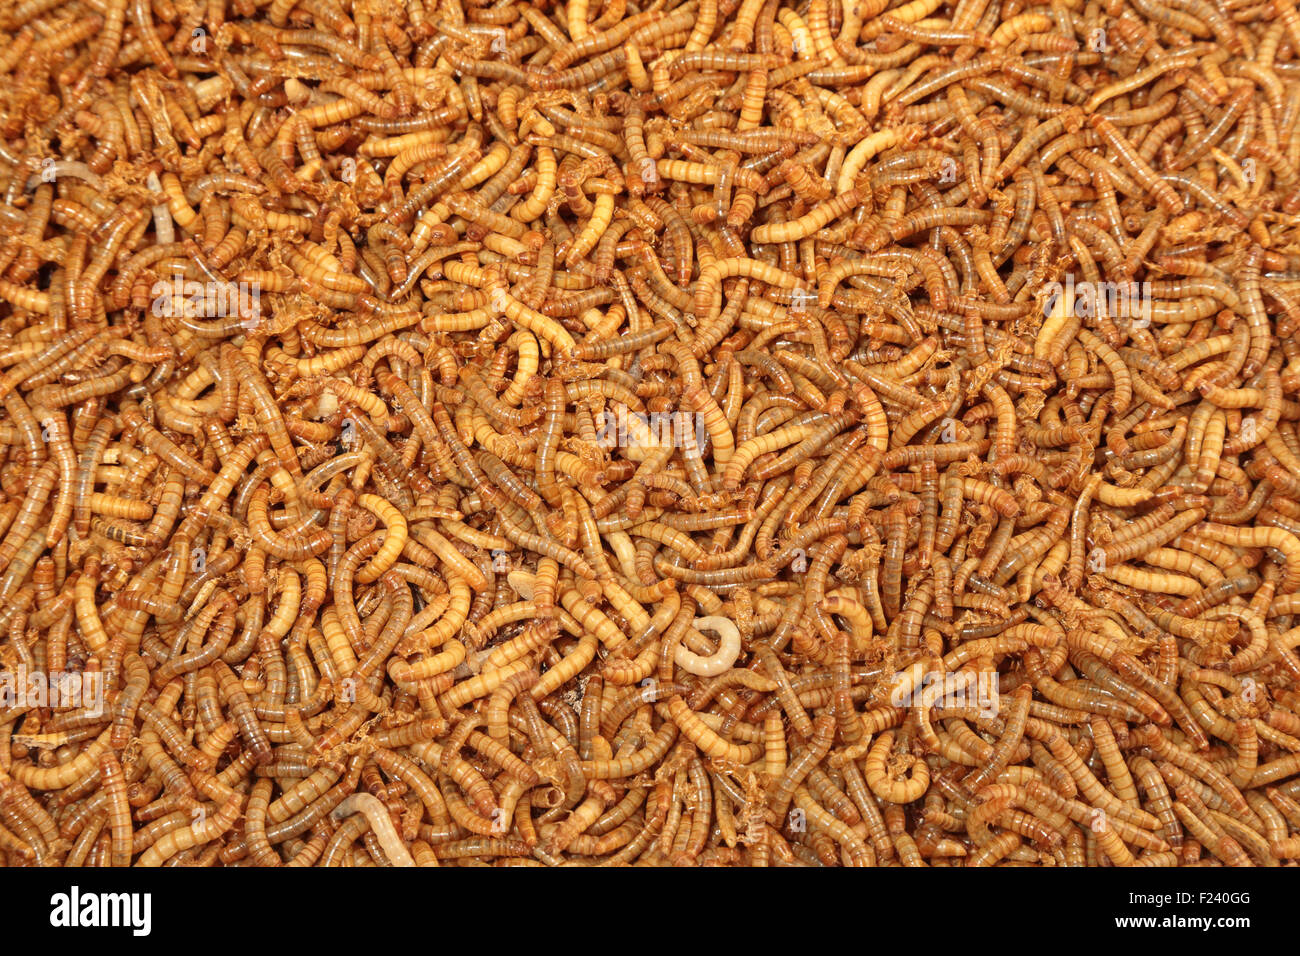 Un tas de larves de vers de farine vivants. Ce ver est utilisée comme nourriture pour nourrir les oiseaux, les reptiles ou les poissons. Peut être utilisé comme arrière-plan Banque D'Images